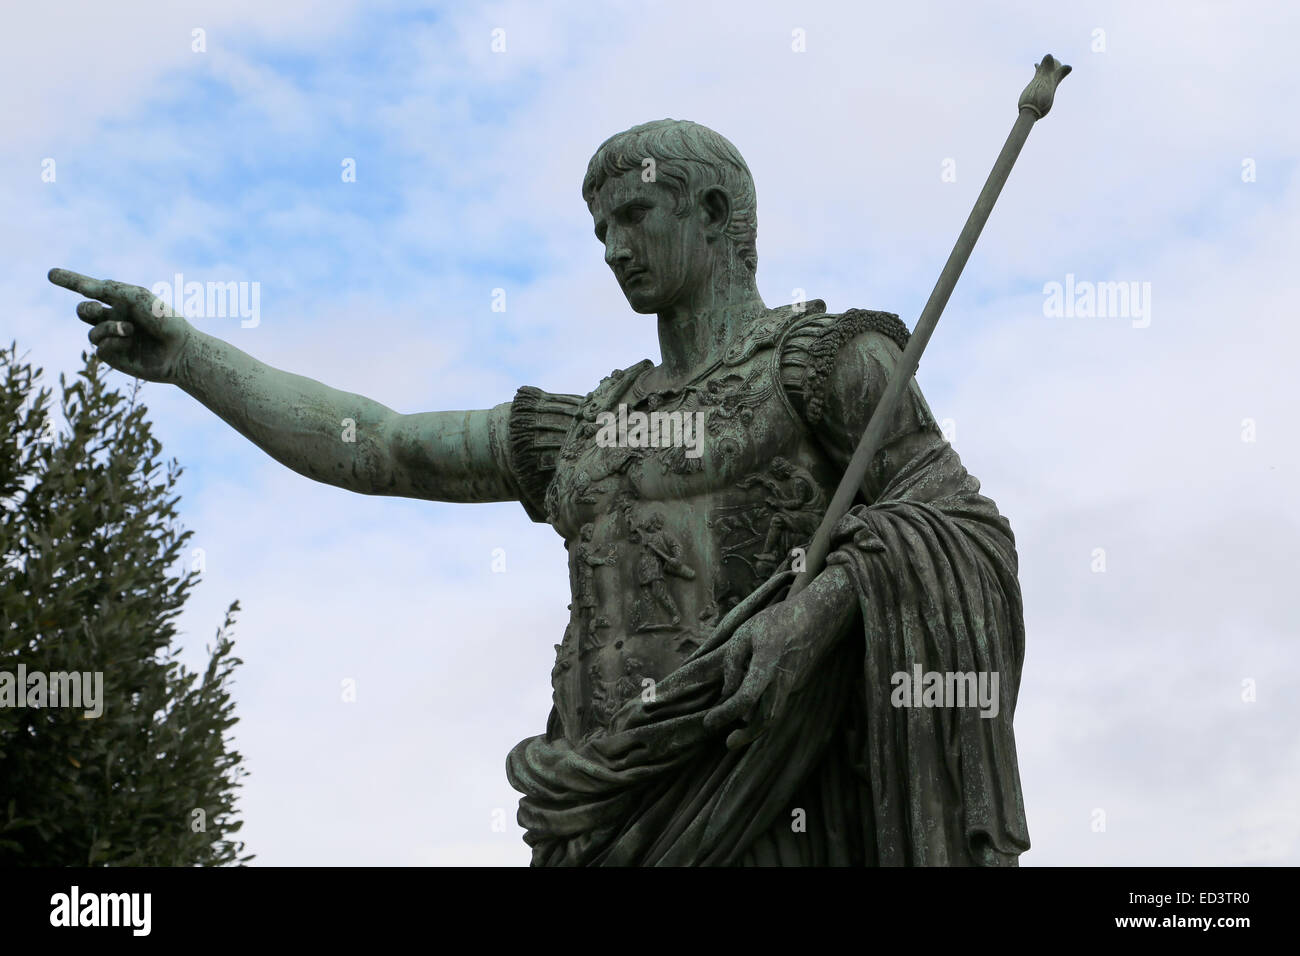 Statue en bronze de l'empereur Nerva (AD 30 AD-98). Forum d'Auguste. Rome. L'Italie. Détail. Banque D'Images